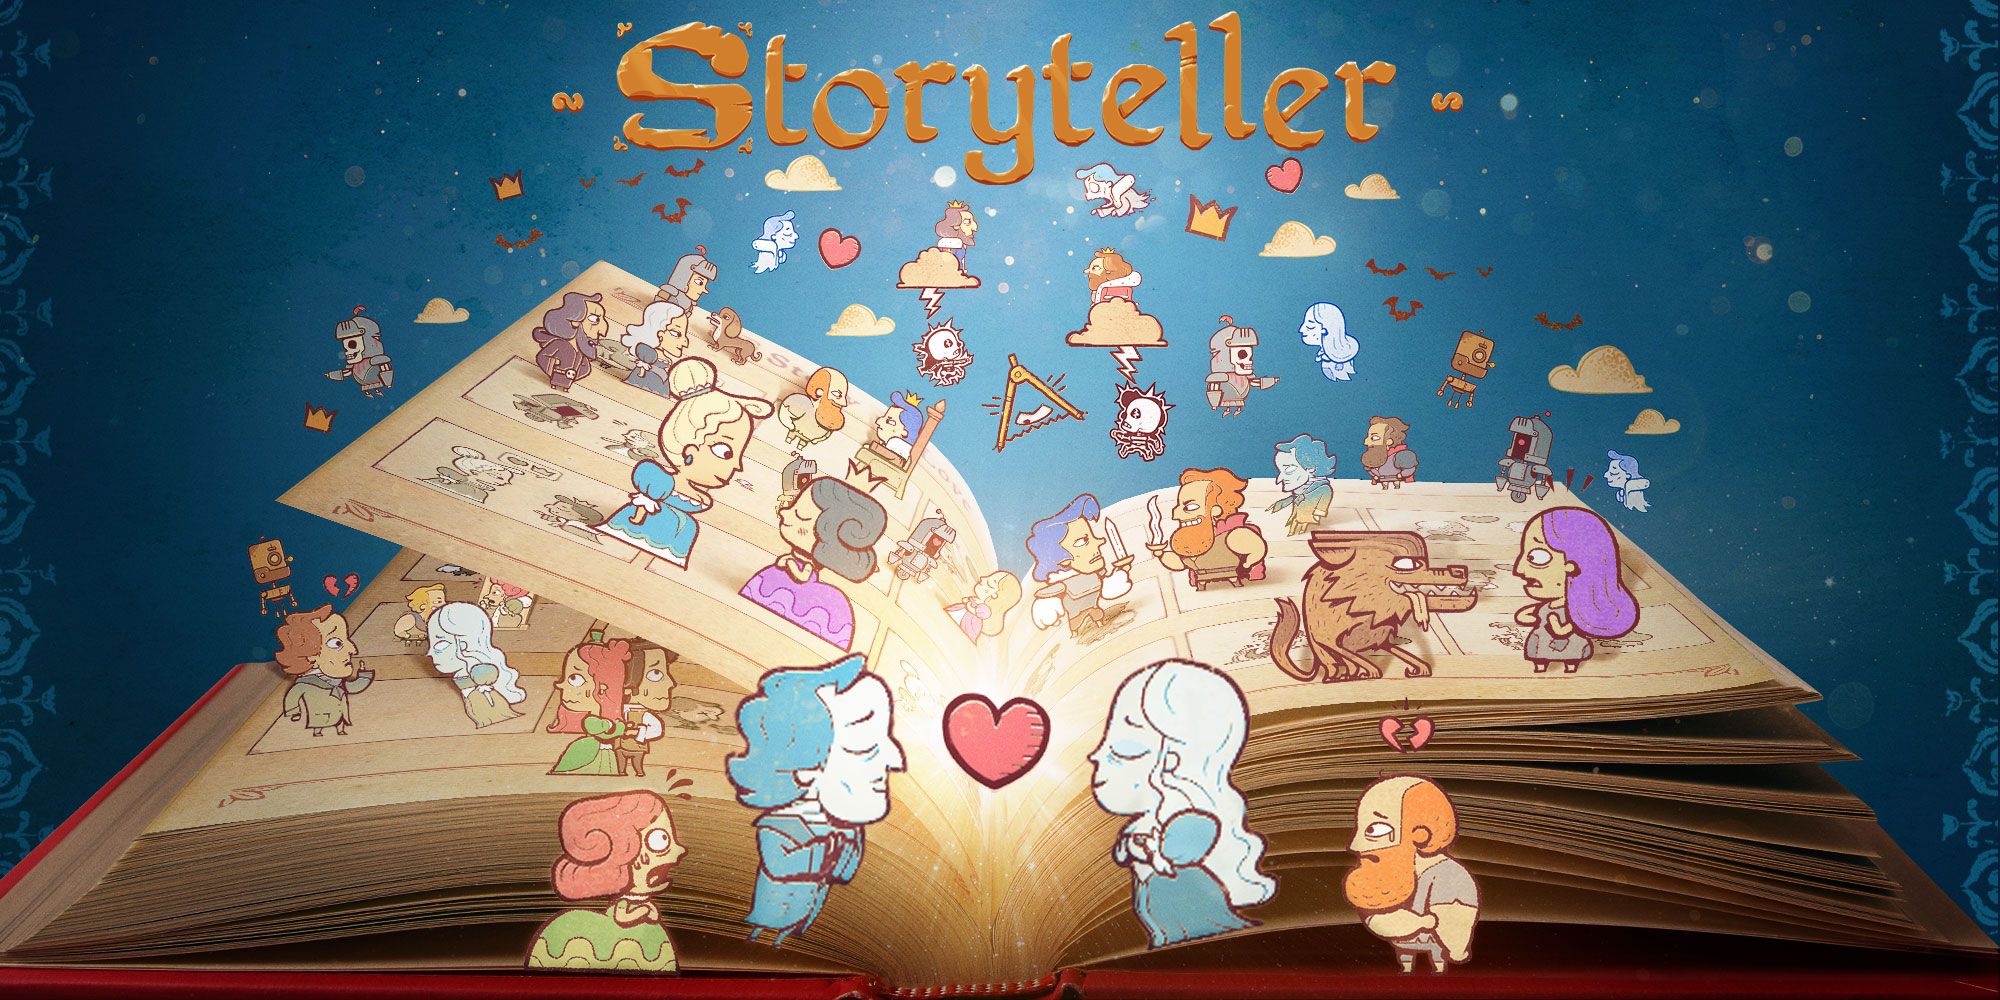 Storyteller-Kunstwerk, das Charaktere über dem Buch zeigt